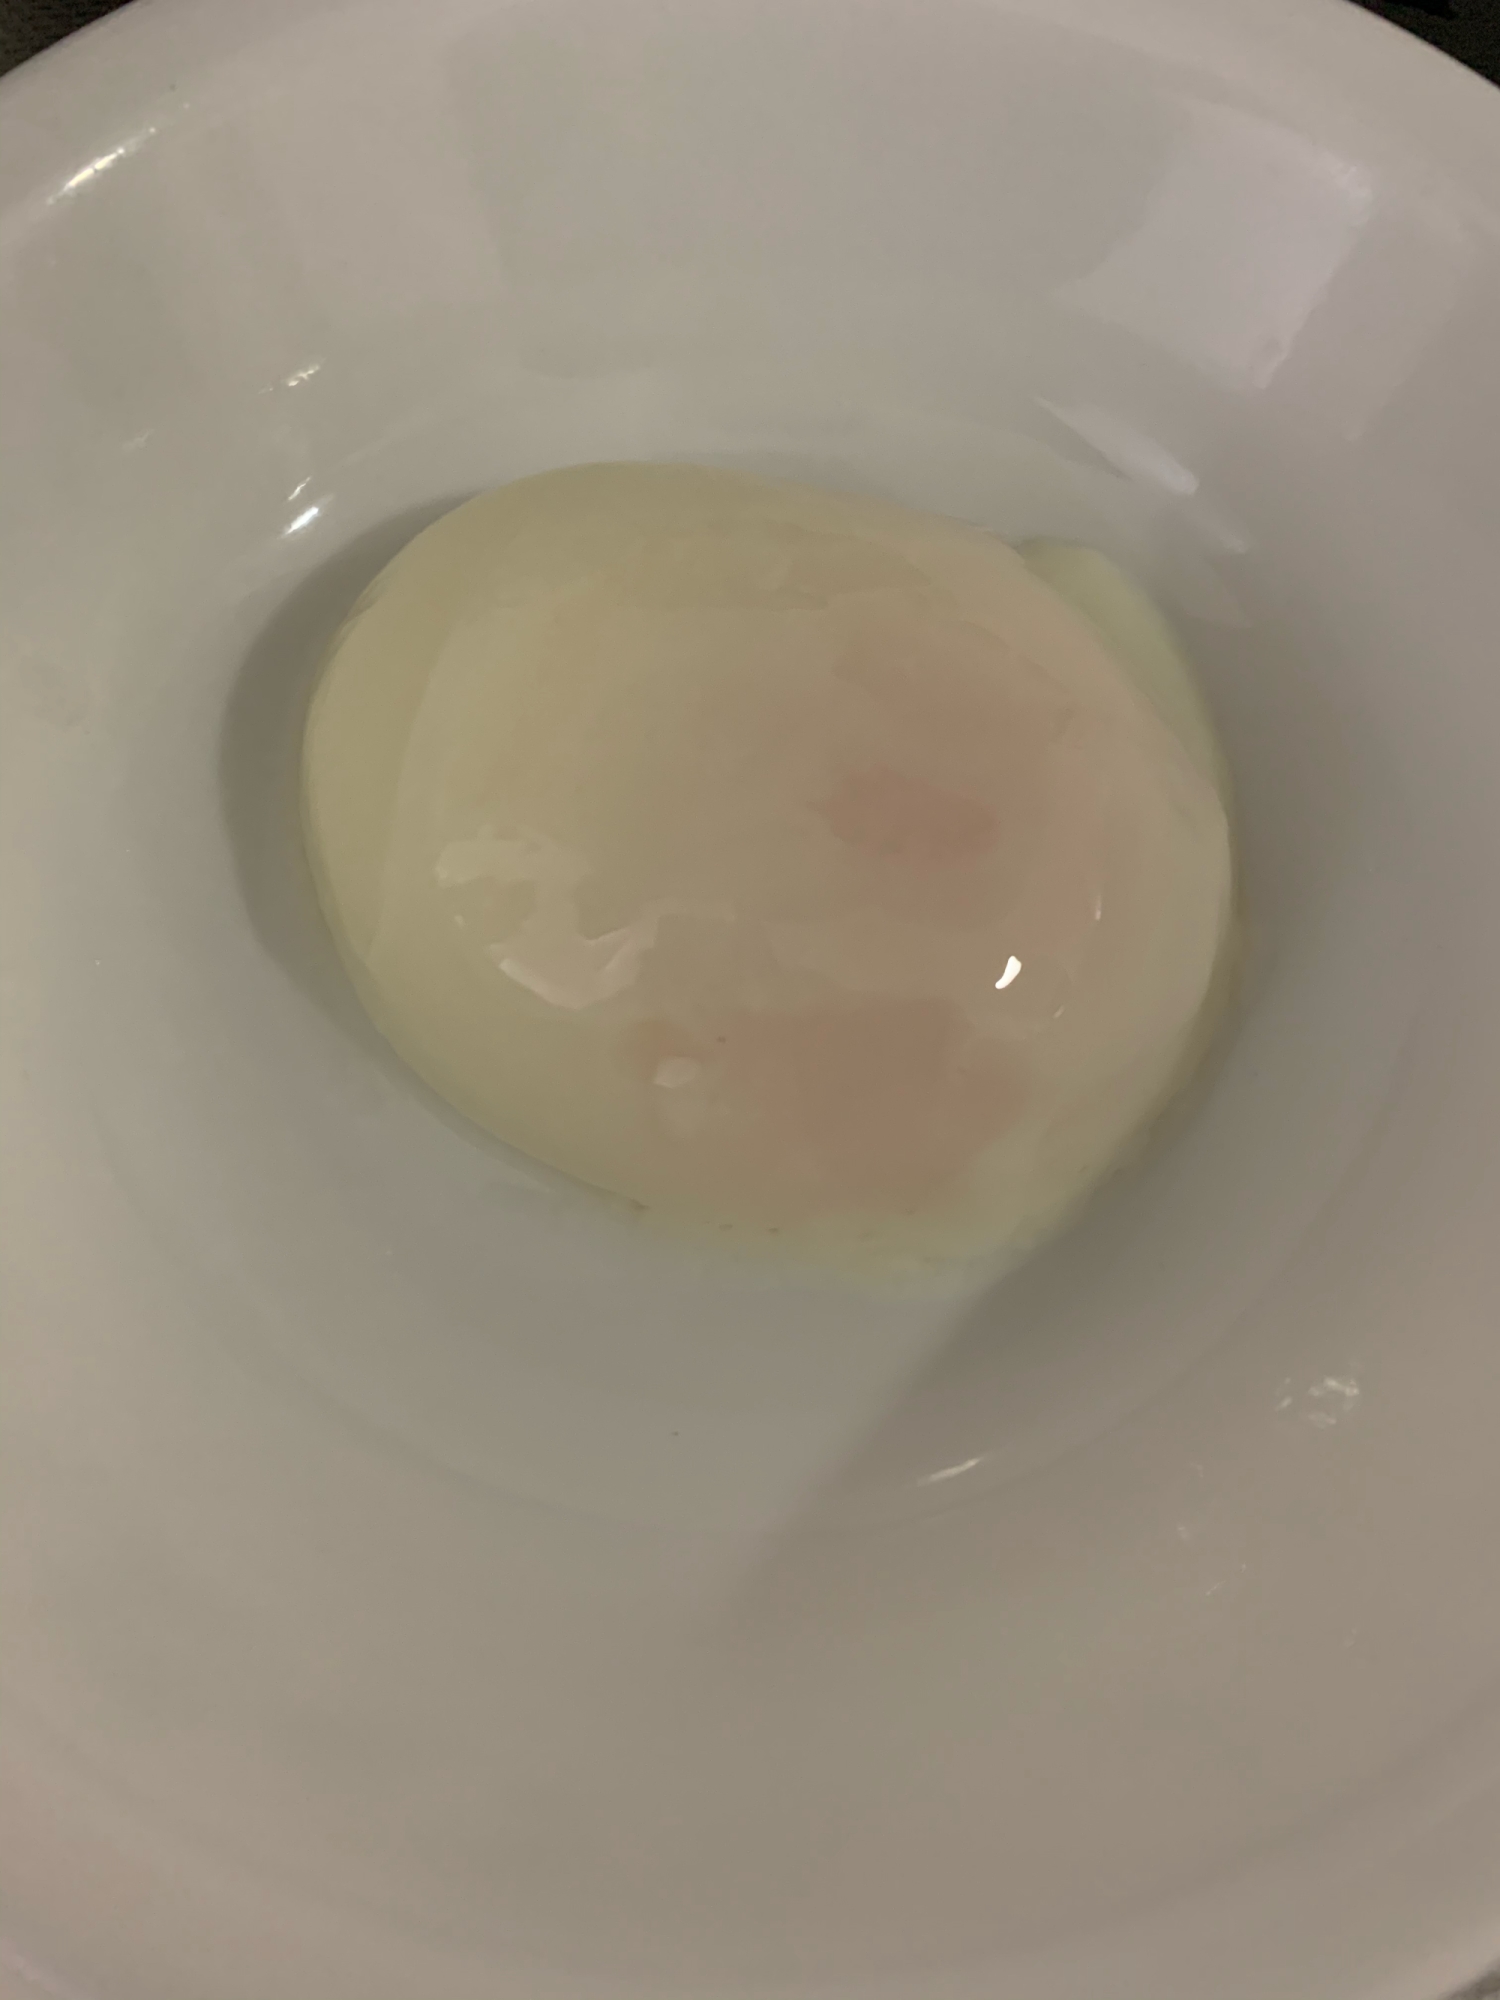 基本の温泉卵の作り方